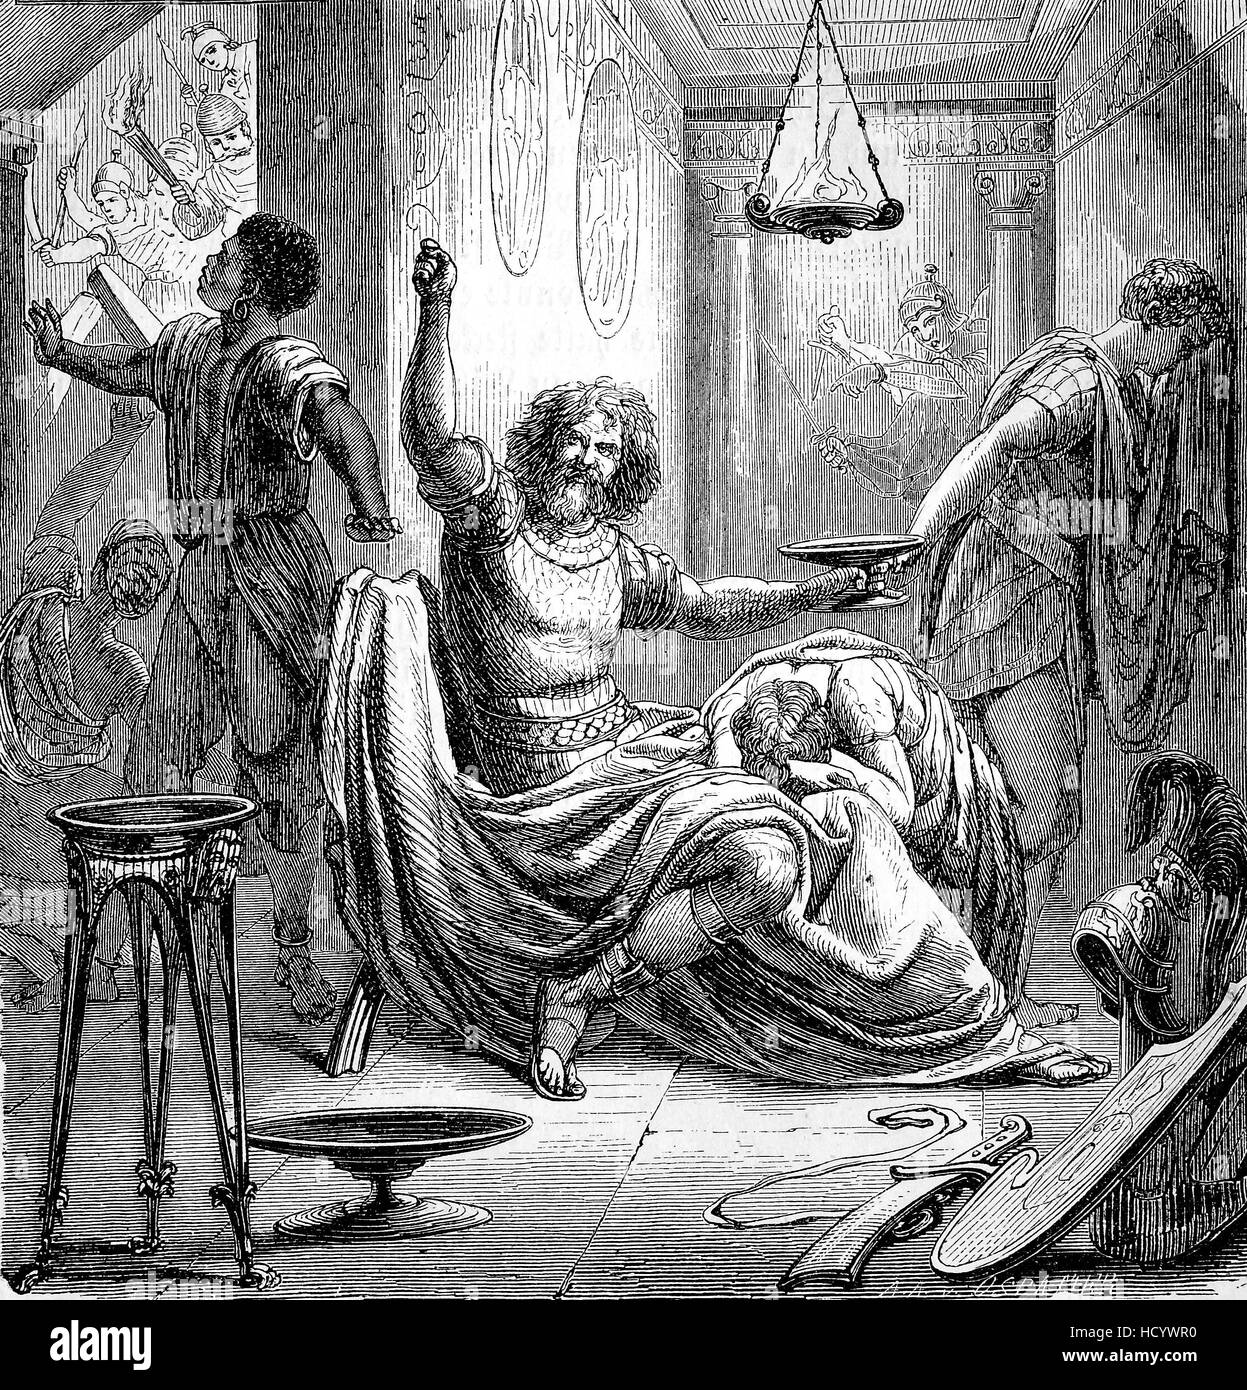 Tod von Hannibal, 247 BC - 181 v. Chr. Hannibal Barkas, punische Feldherr aus Karthago, die Geschichte des antiken Rom, Römisches Reich, Italien Stockfoto